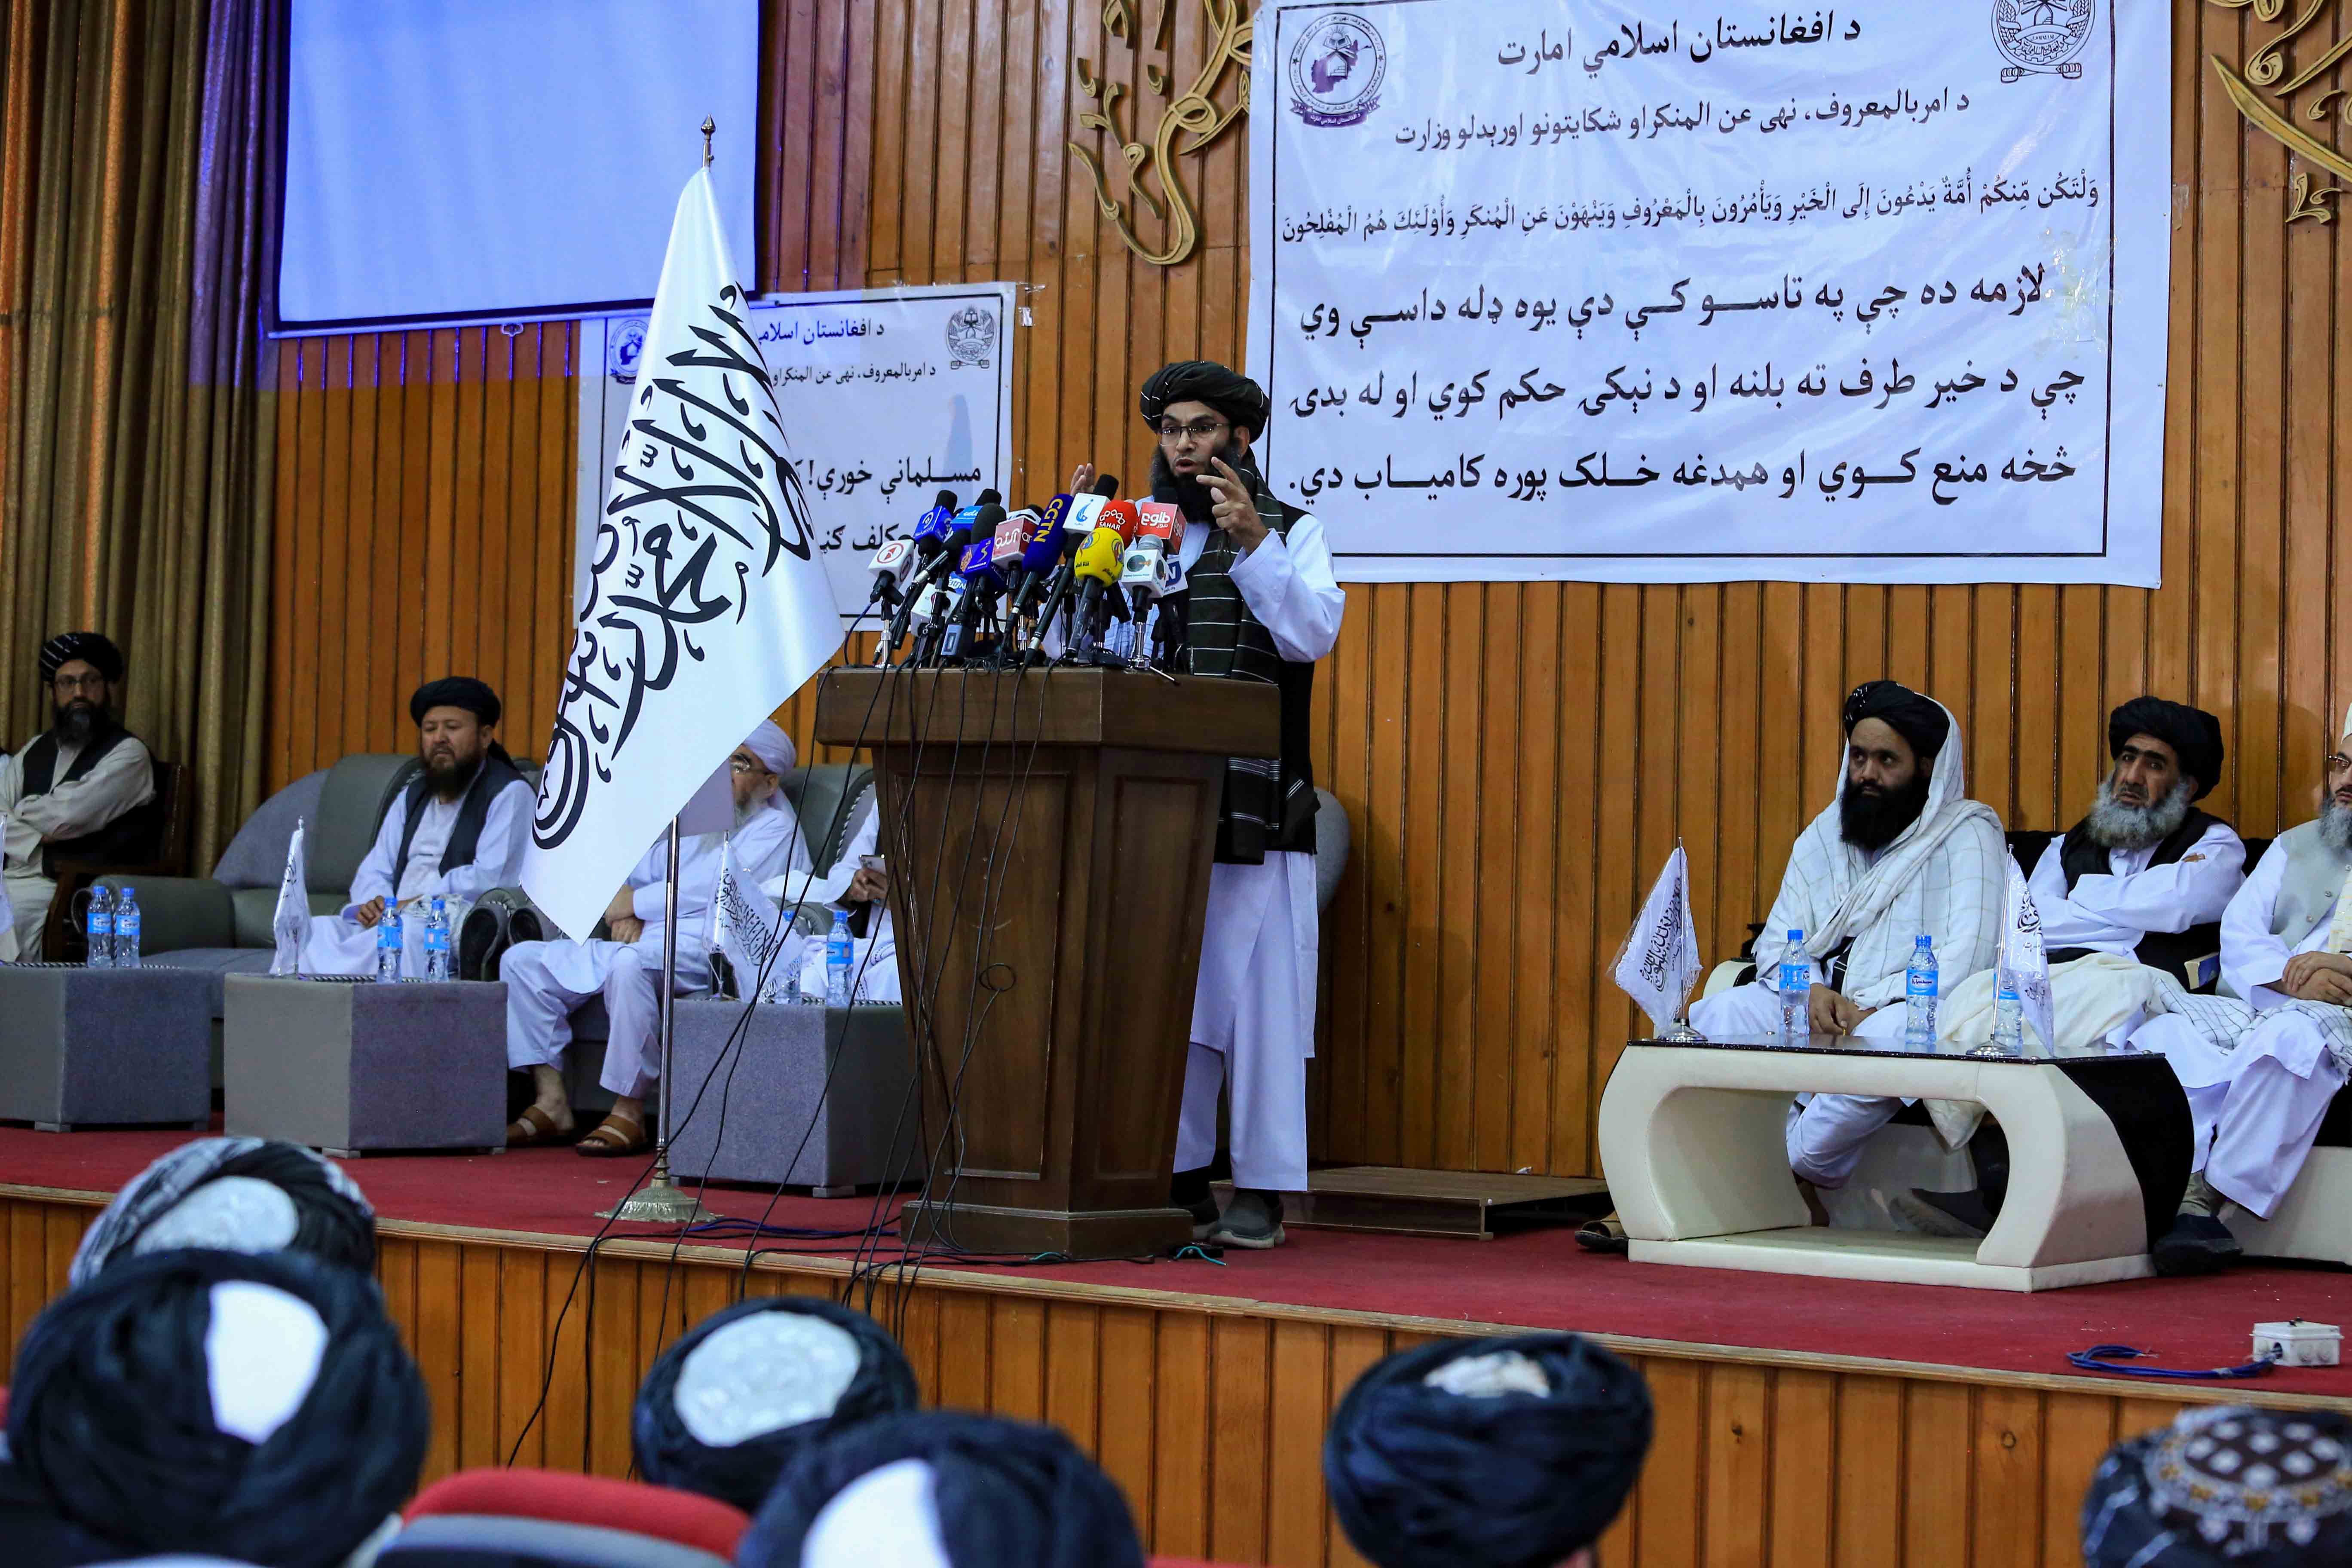 Els talibans imposen el burca obligatori a l'Afganistan